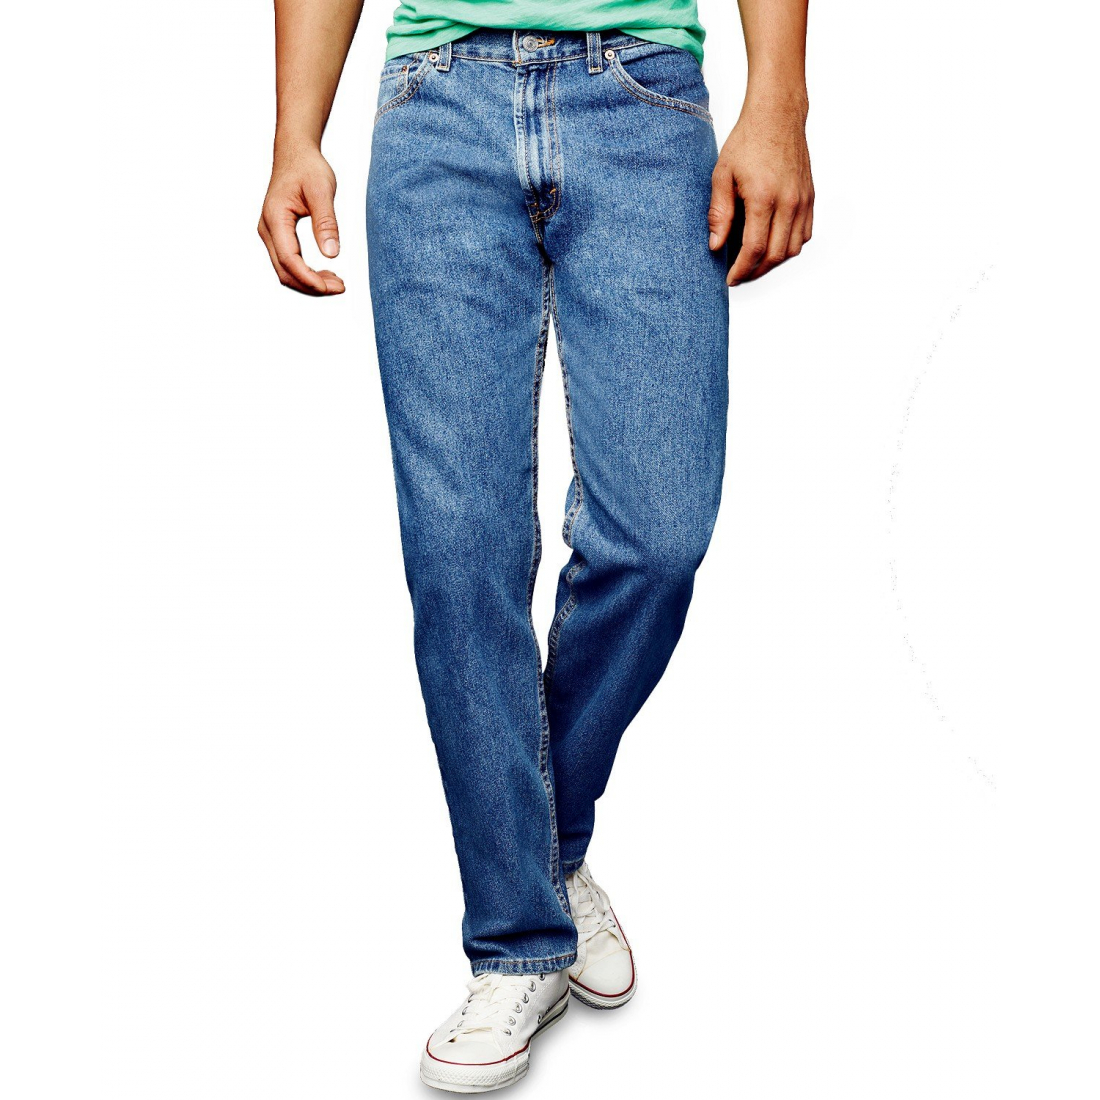 Men's '506 Non-Stretch' Jeans